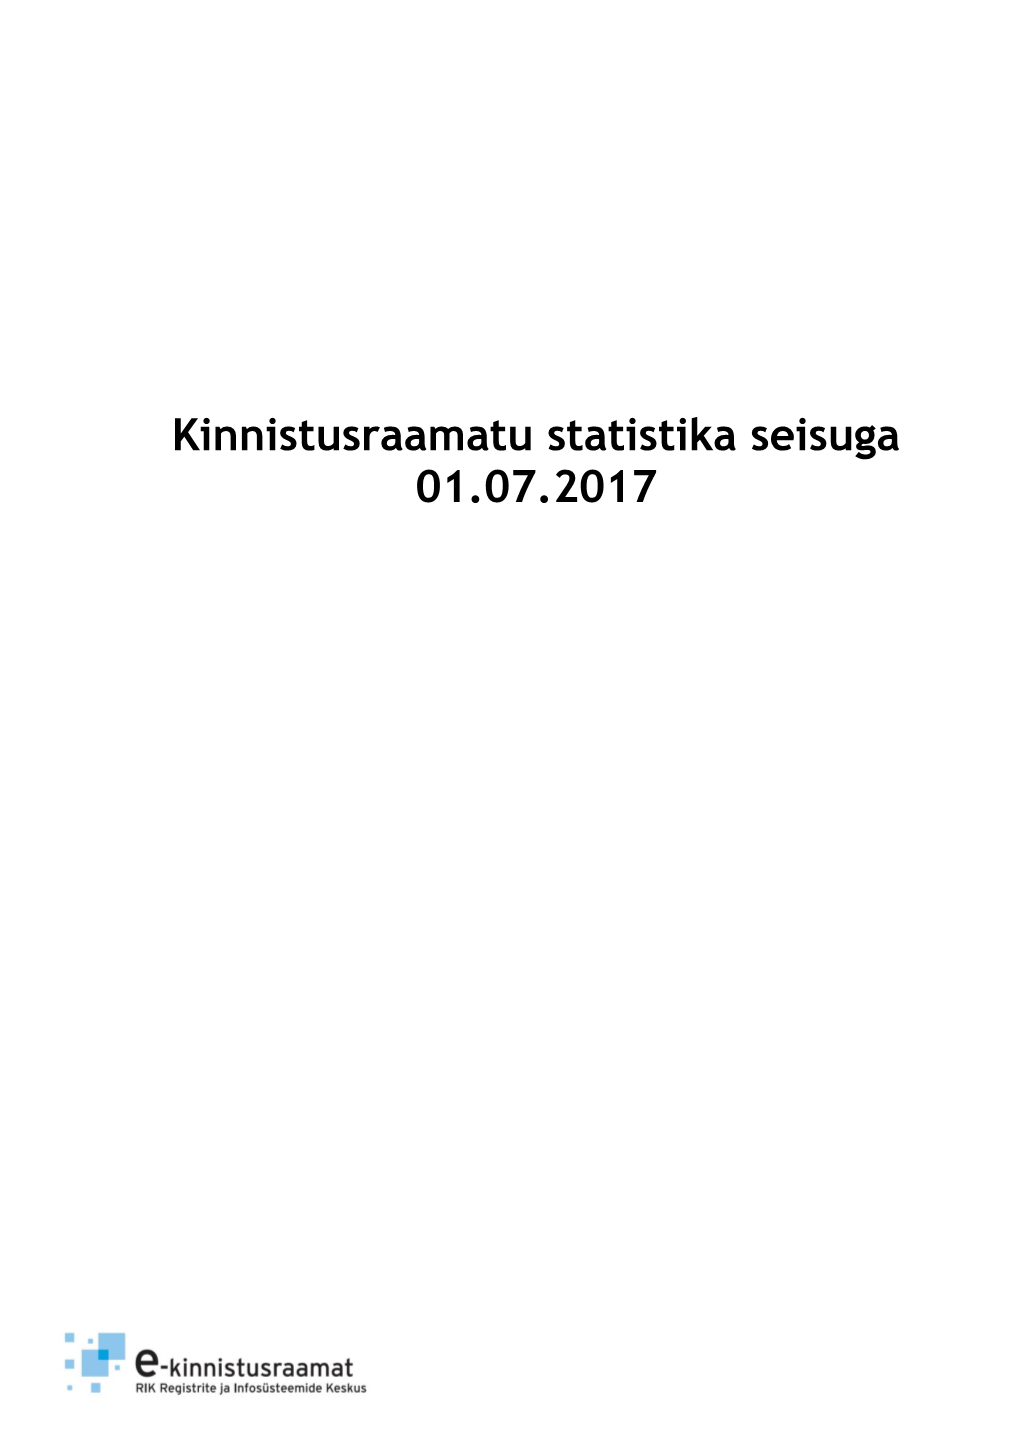 Kinnistusraamatu Statistika Seisuga 01.07.2017